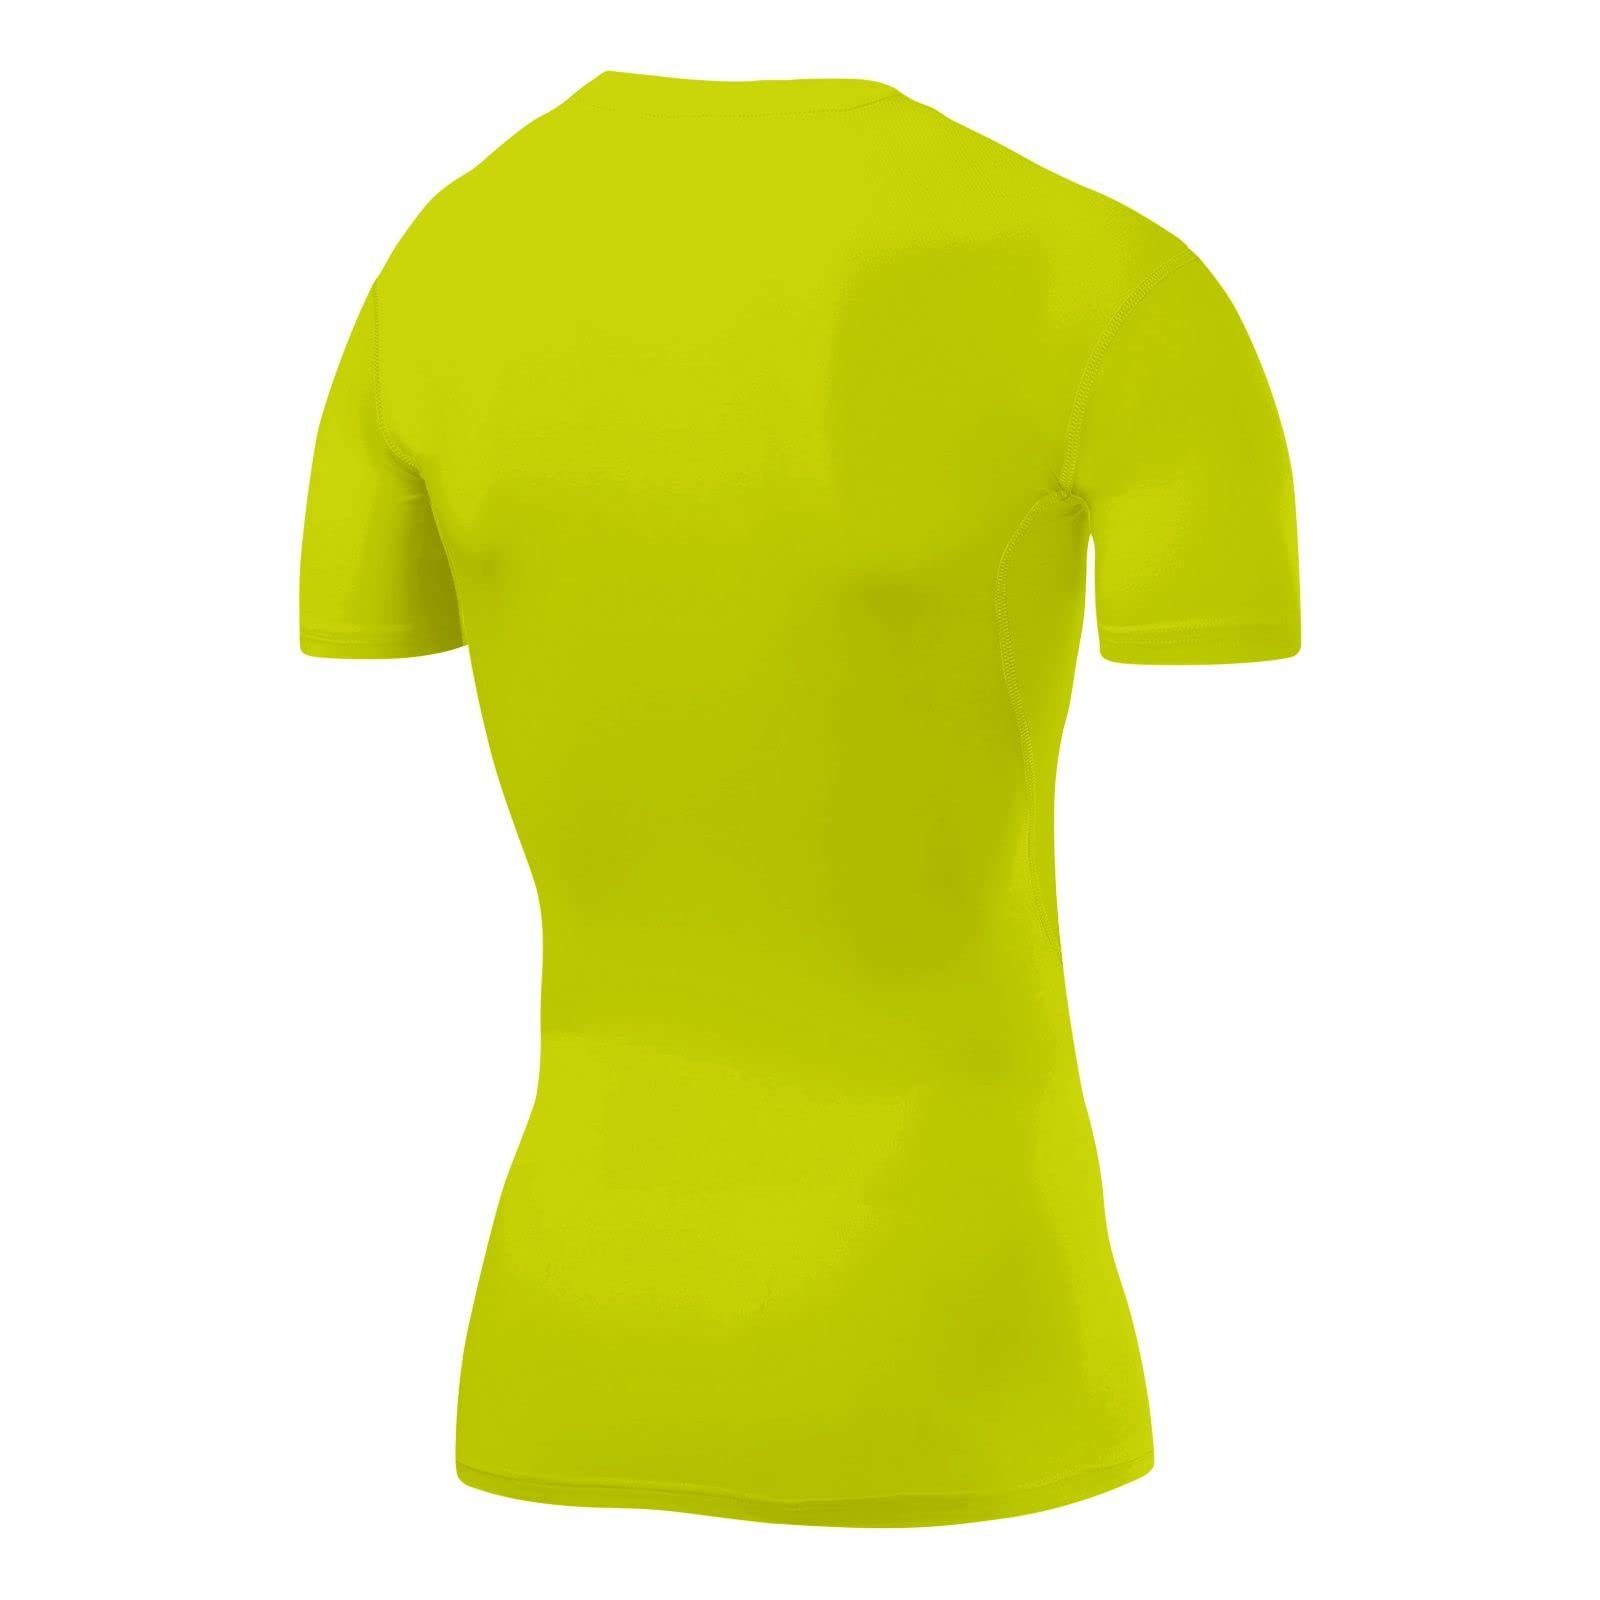 Herren elastisch Grün HyperFusion Licht TCA TCA kurzärmlig, - Sportshirt, Funktionsunterhemd